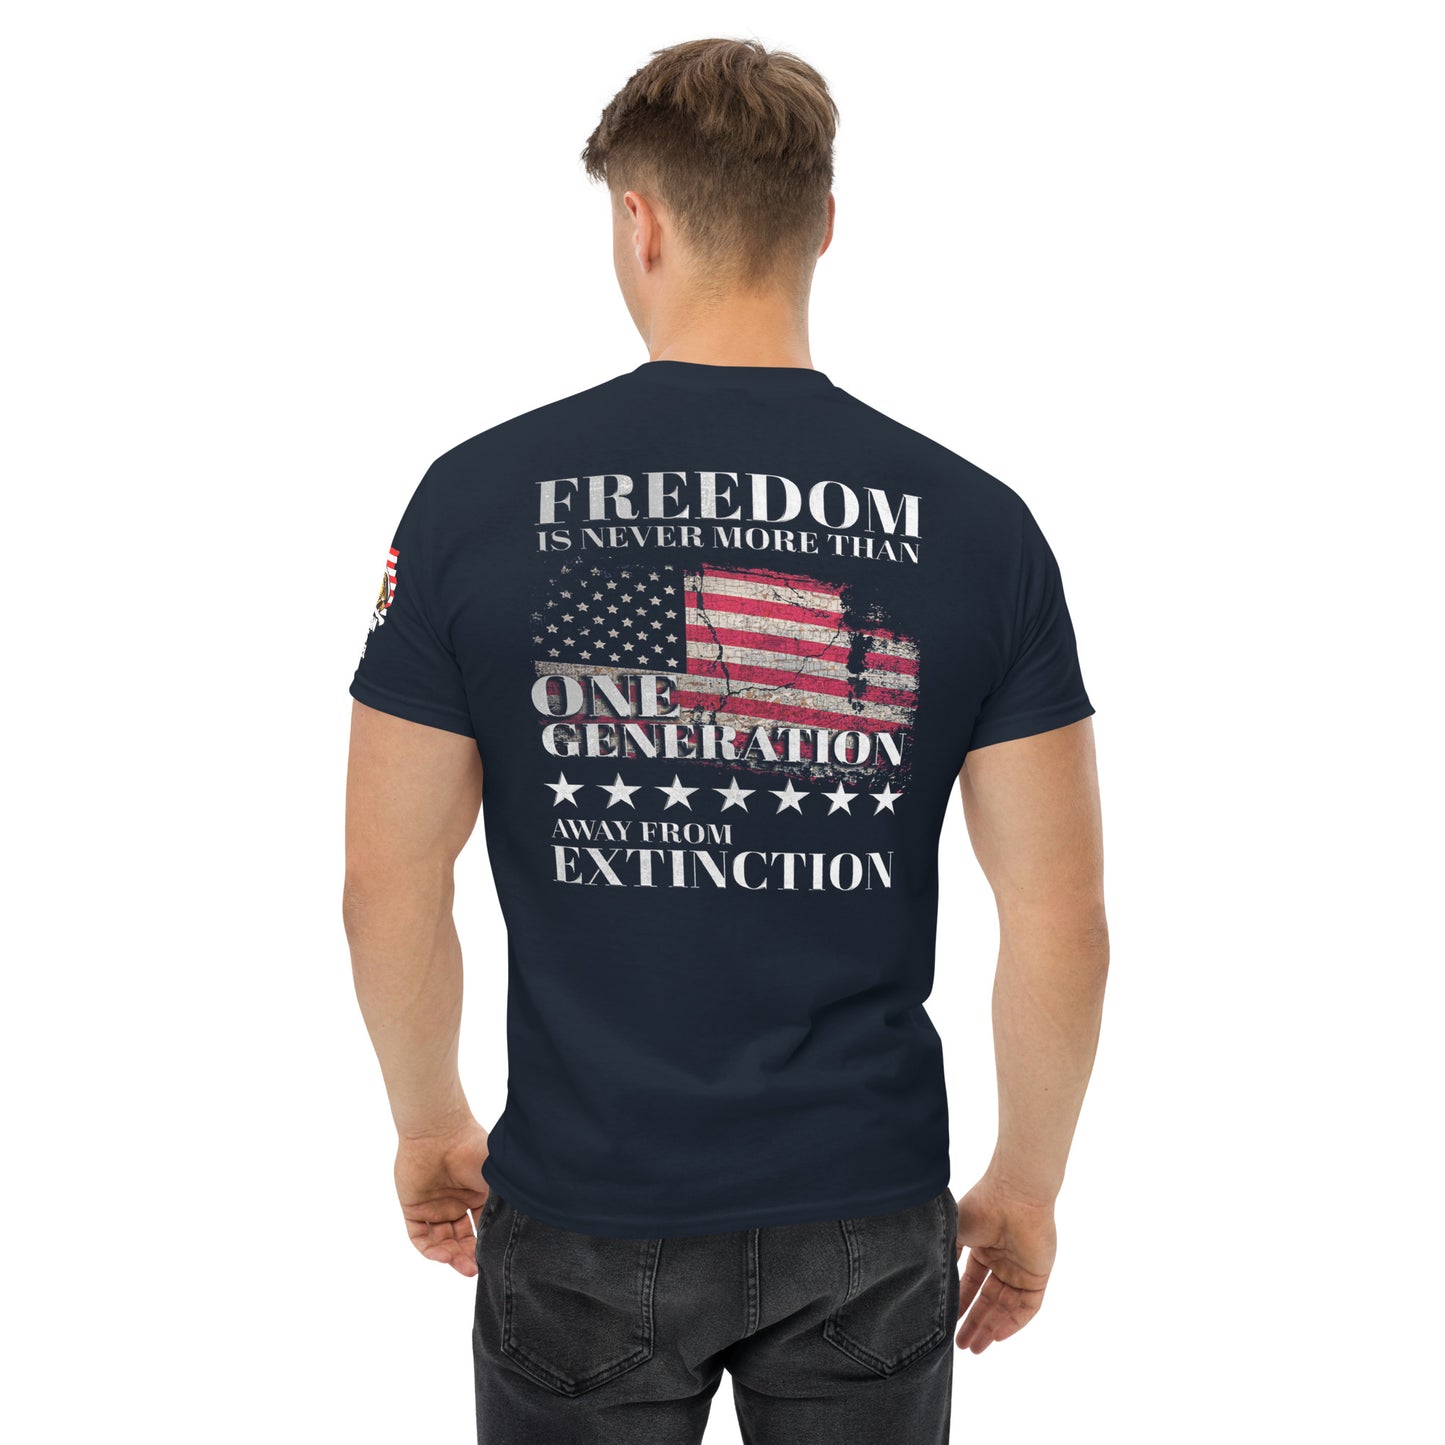 Freedom’s Extinction